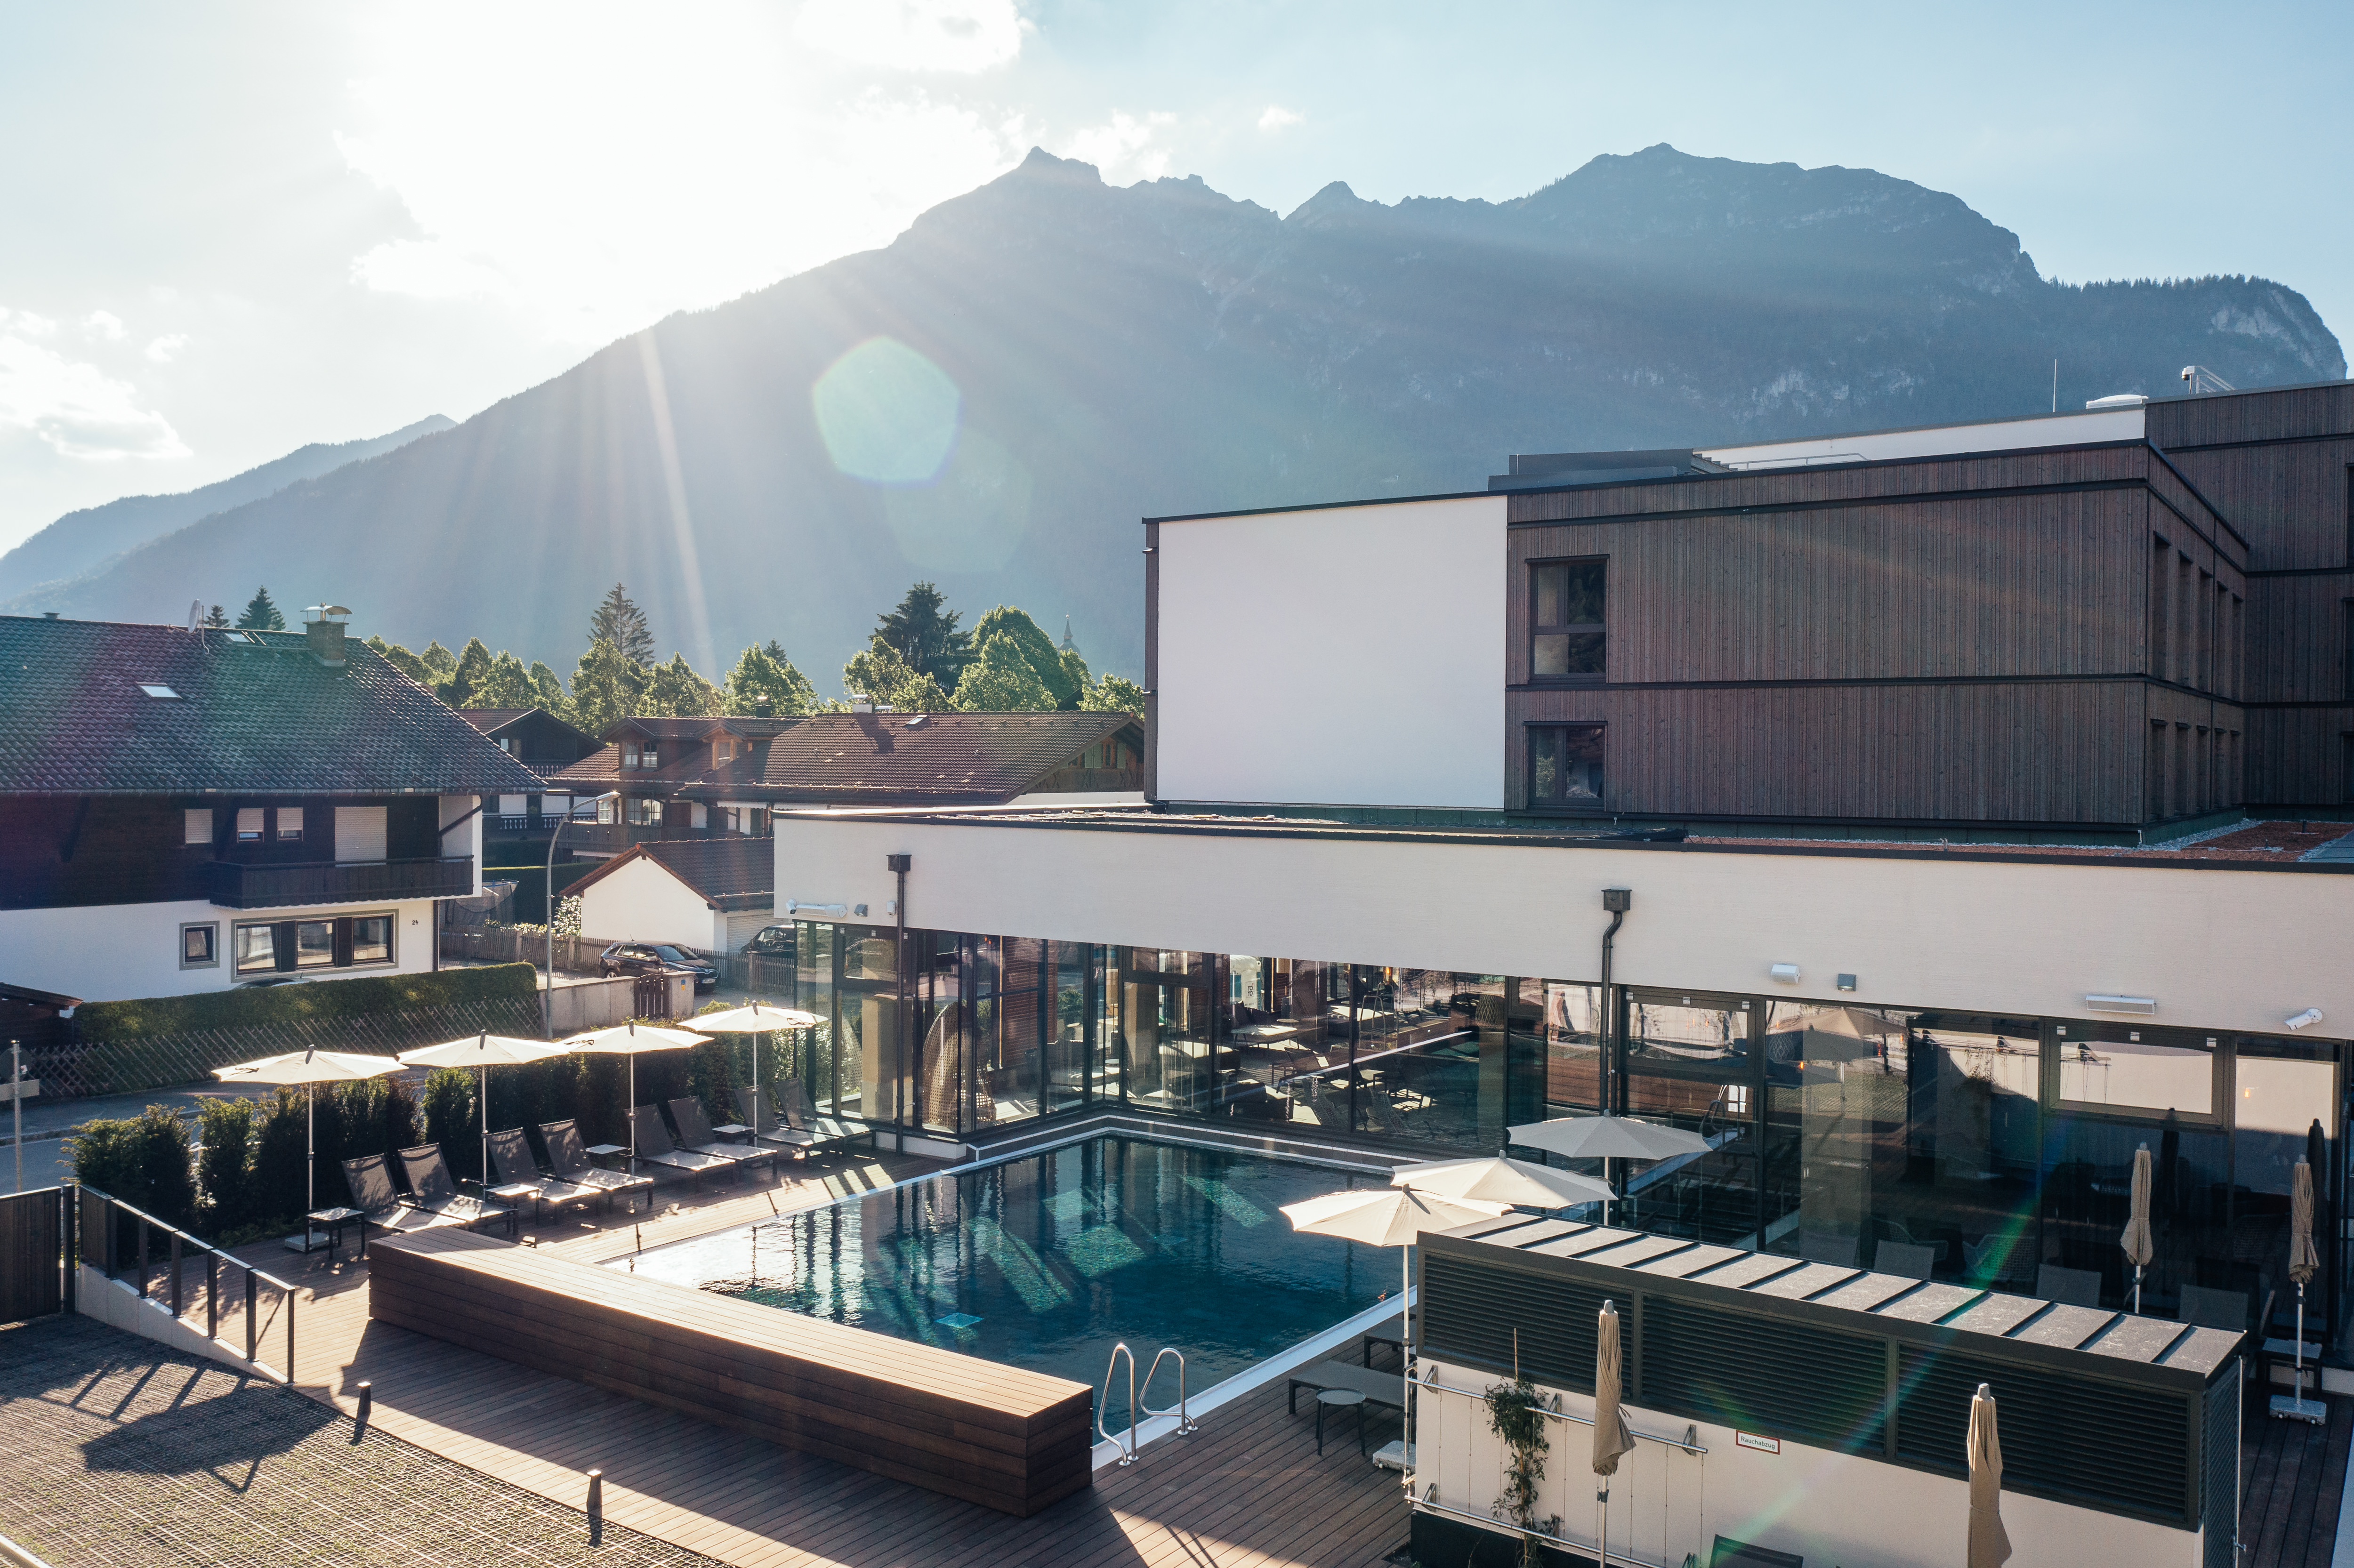 Außenansichten vom aja Resort, Garmisch-Partenkirchen.
